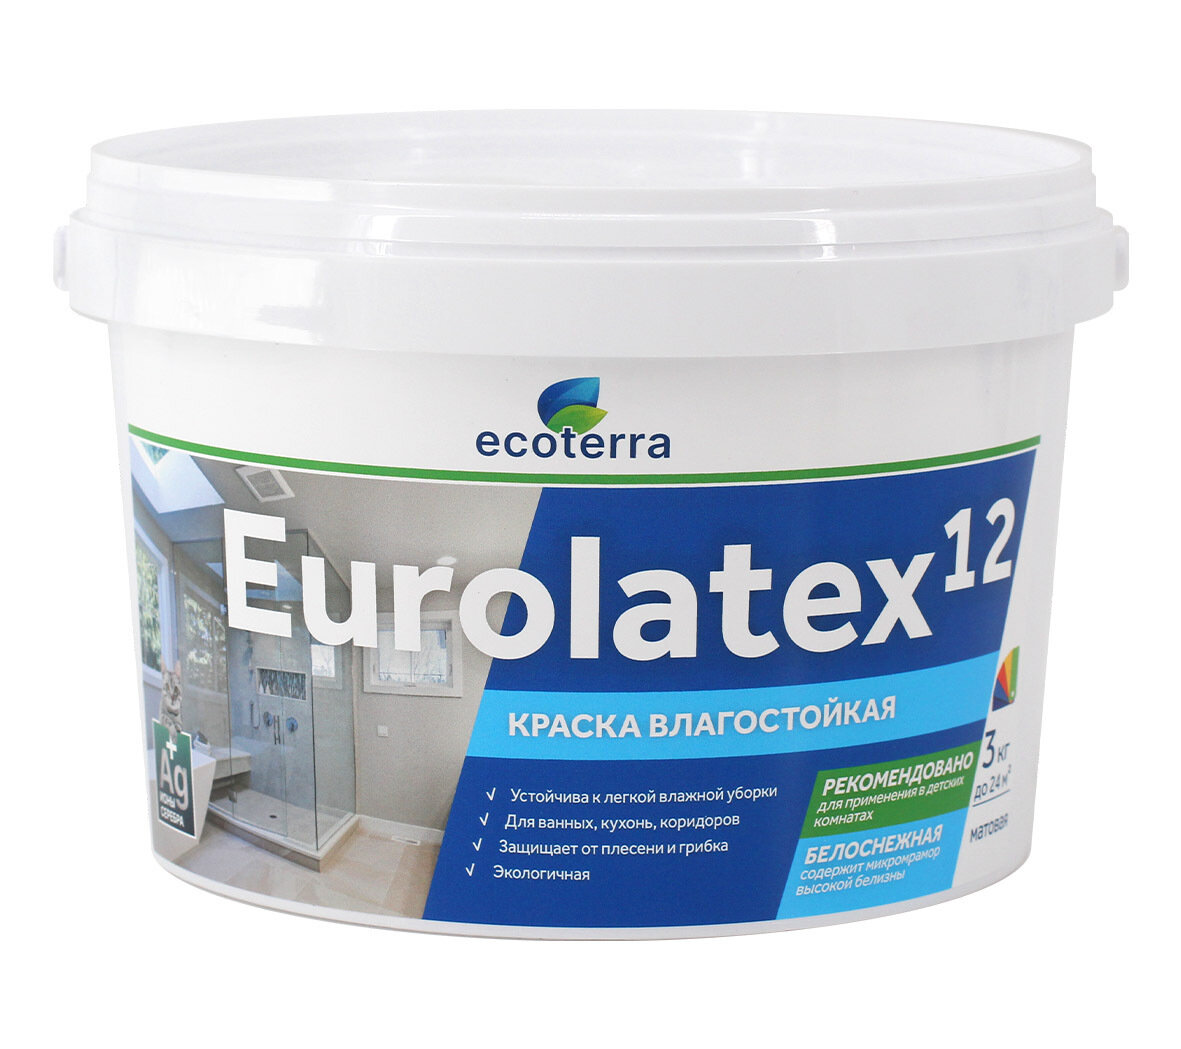 Краска Ecoterra Eurolatex 12 ВД-АК 2180, влагостойкая, акриловая, Белоснежная, 3кг